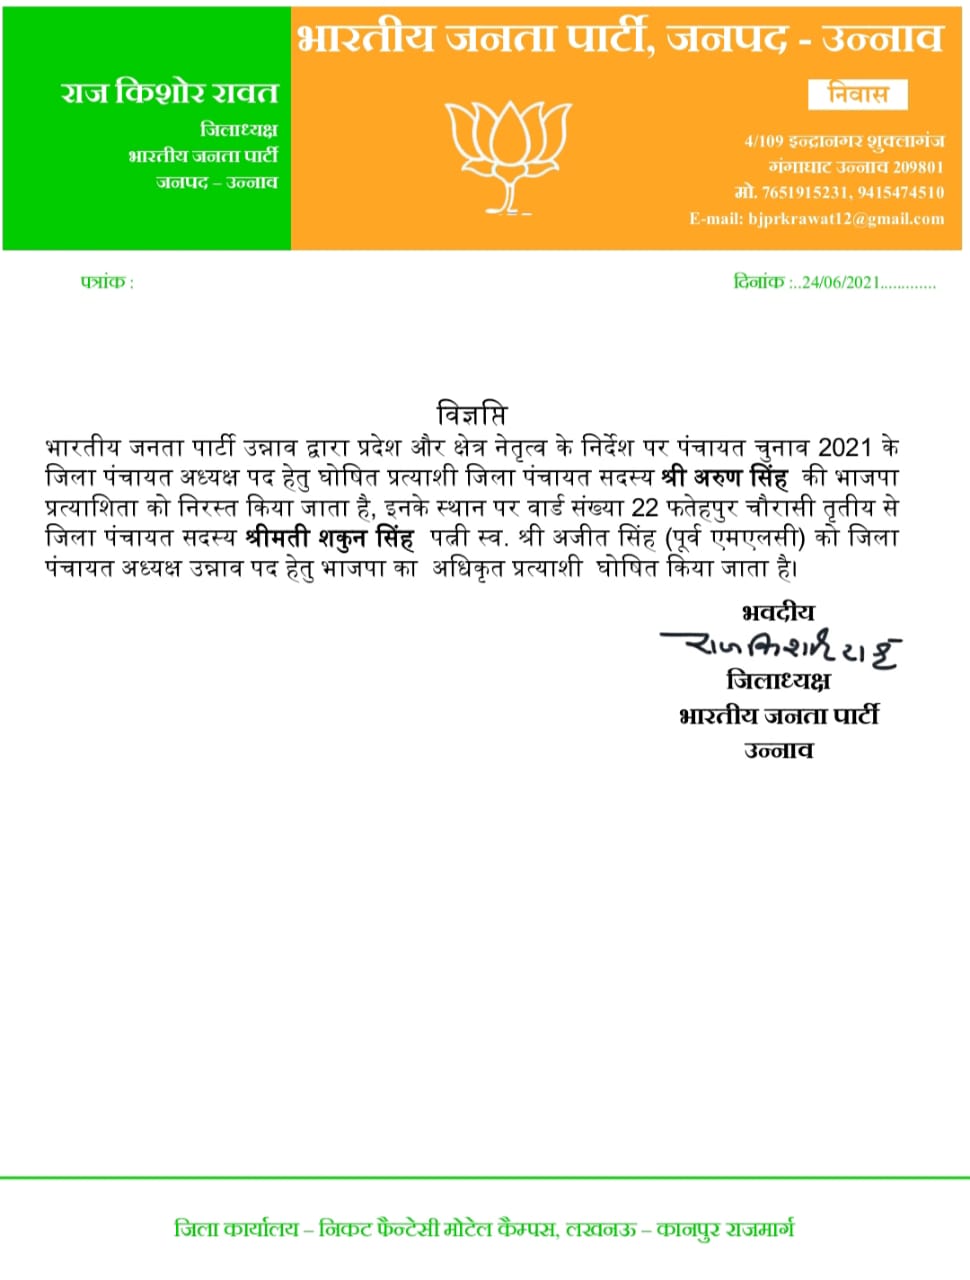 भाजपा ने जारी किया पत्र.